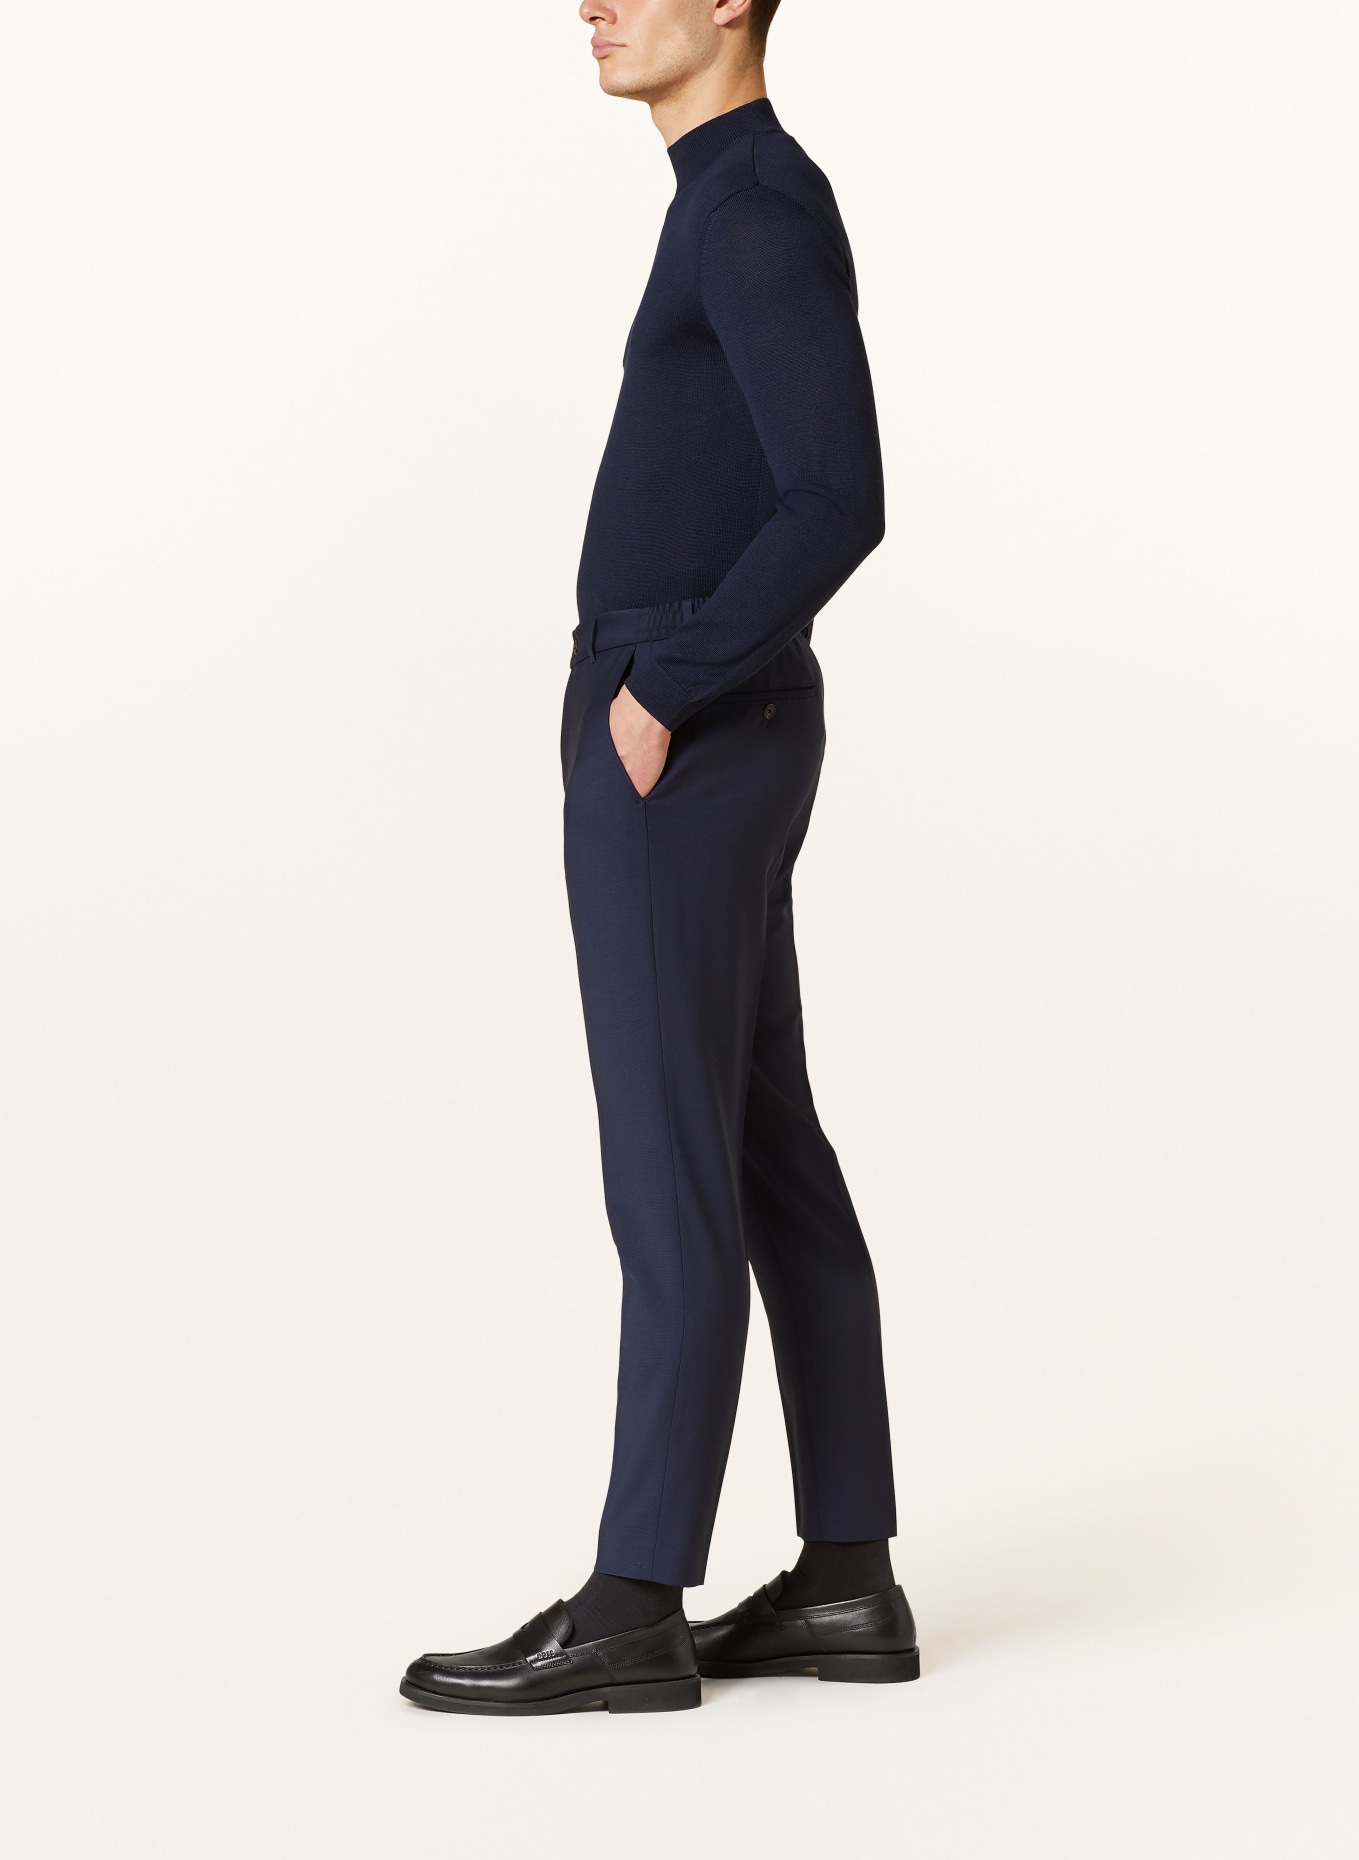 JOOP! Anzughose BAXX Slim Fit, Farbe: 401 Dark Blue                  401 (Bild 5)